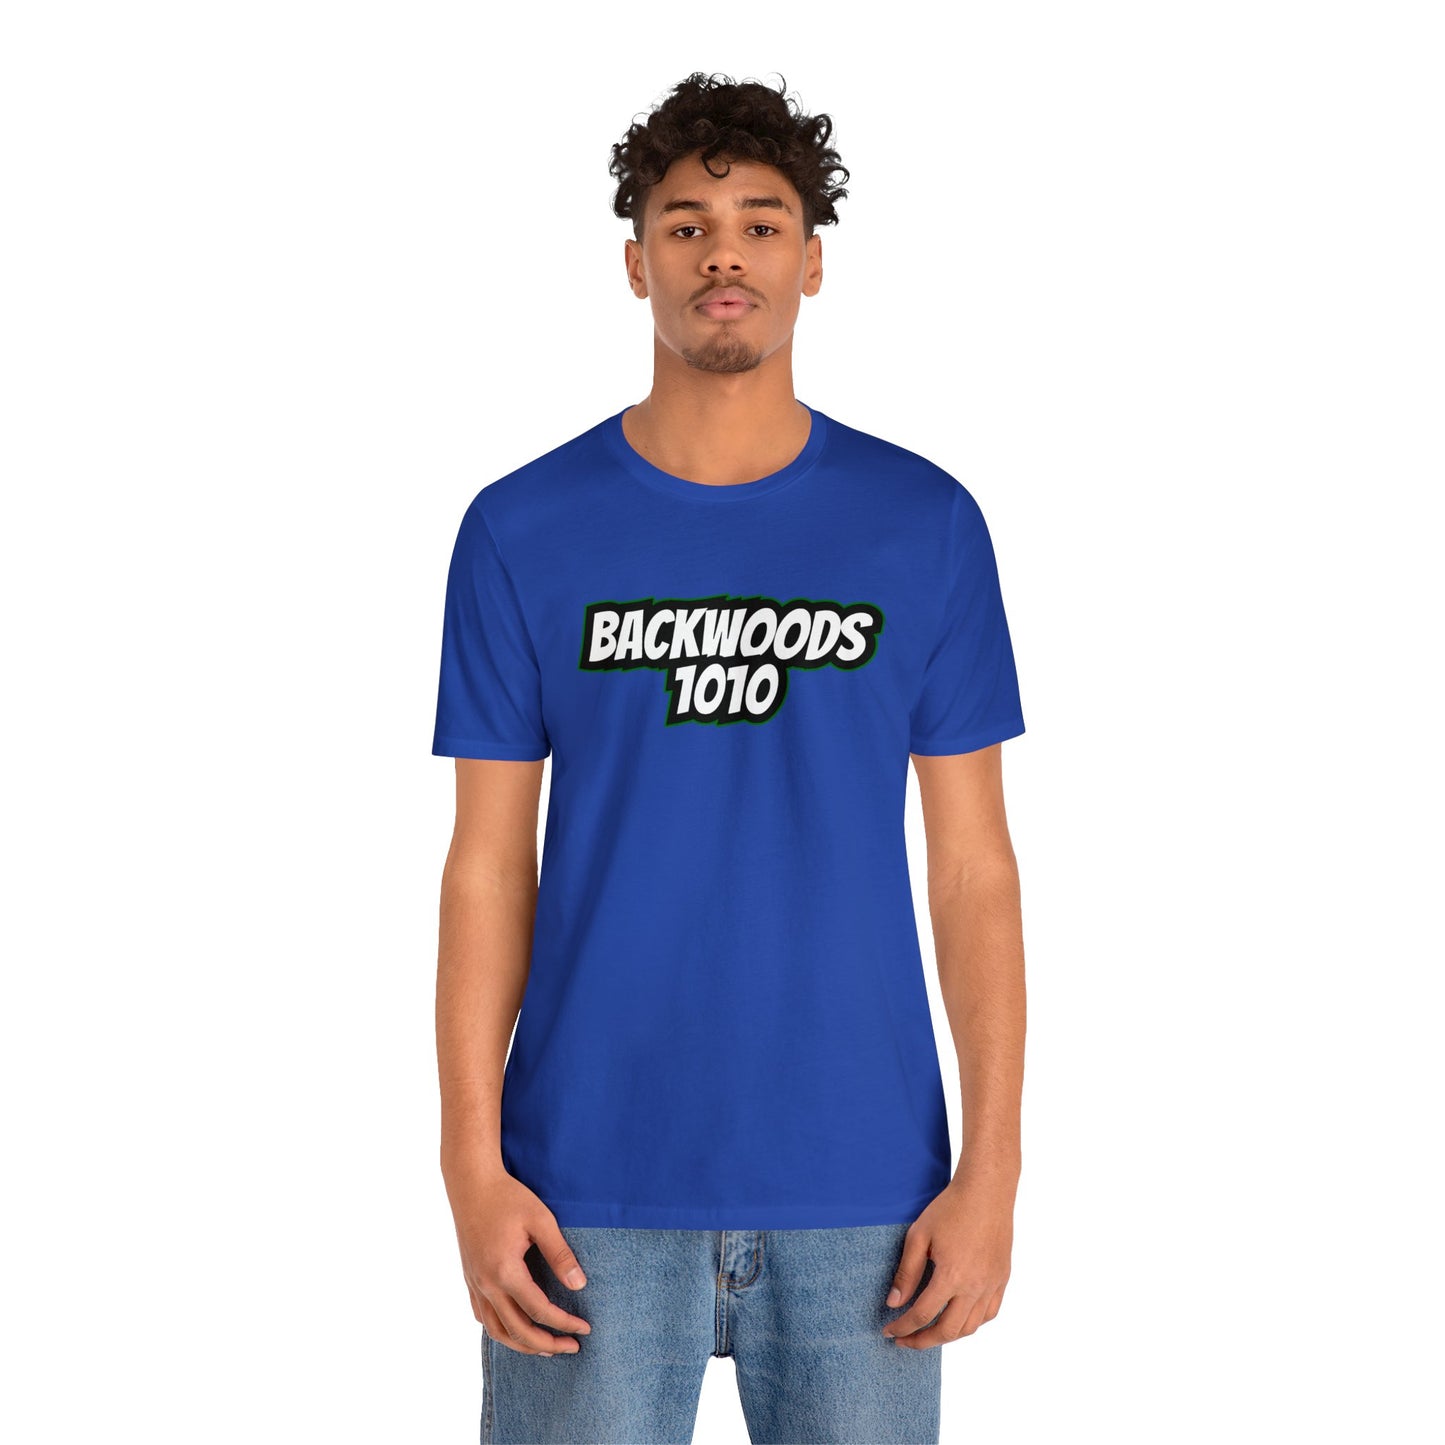 Backwoods1010 Text Logo Unisex T-shirt